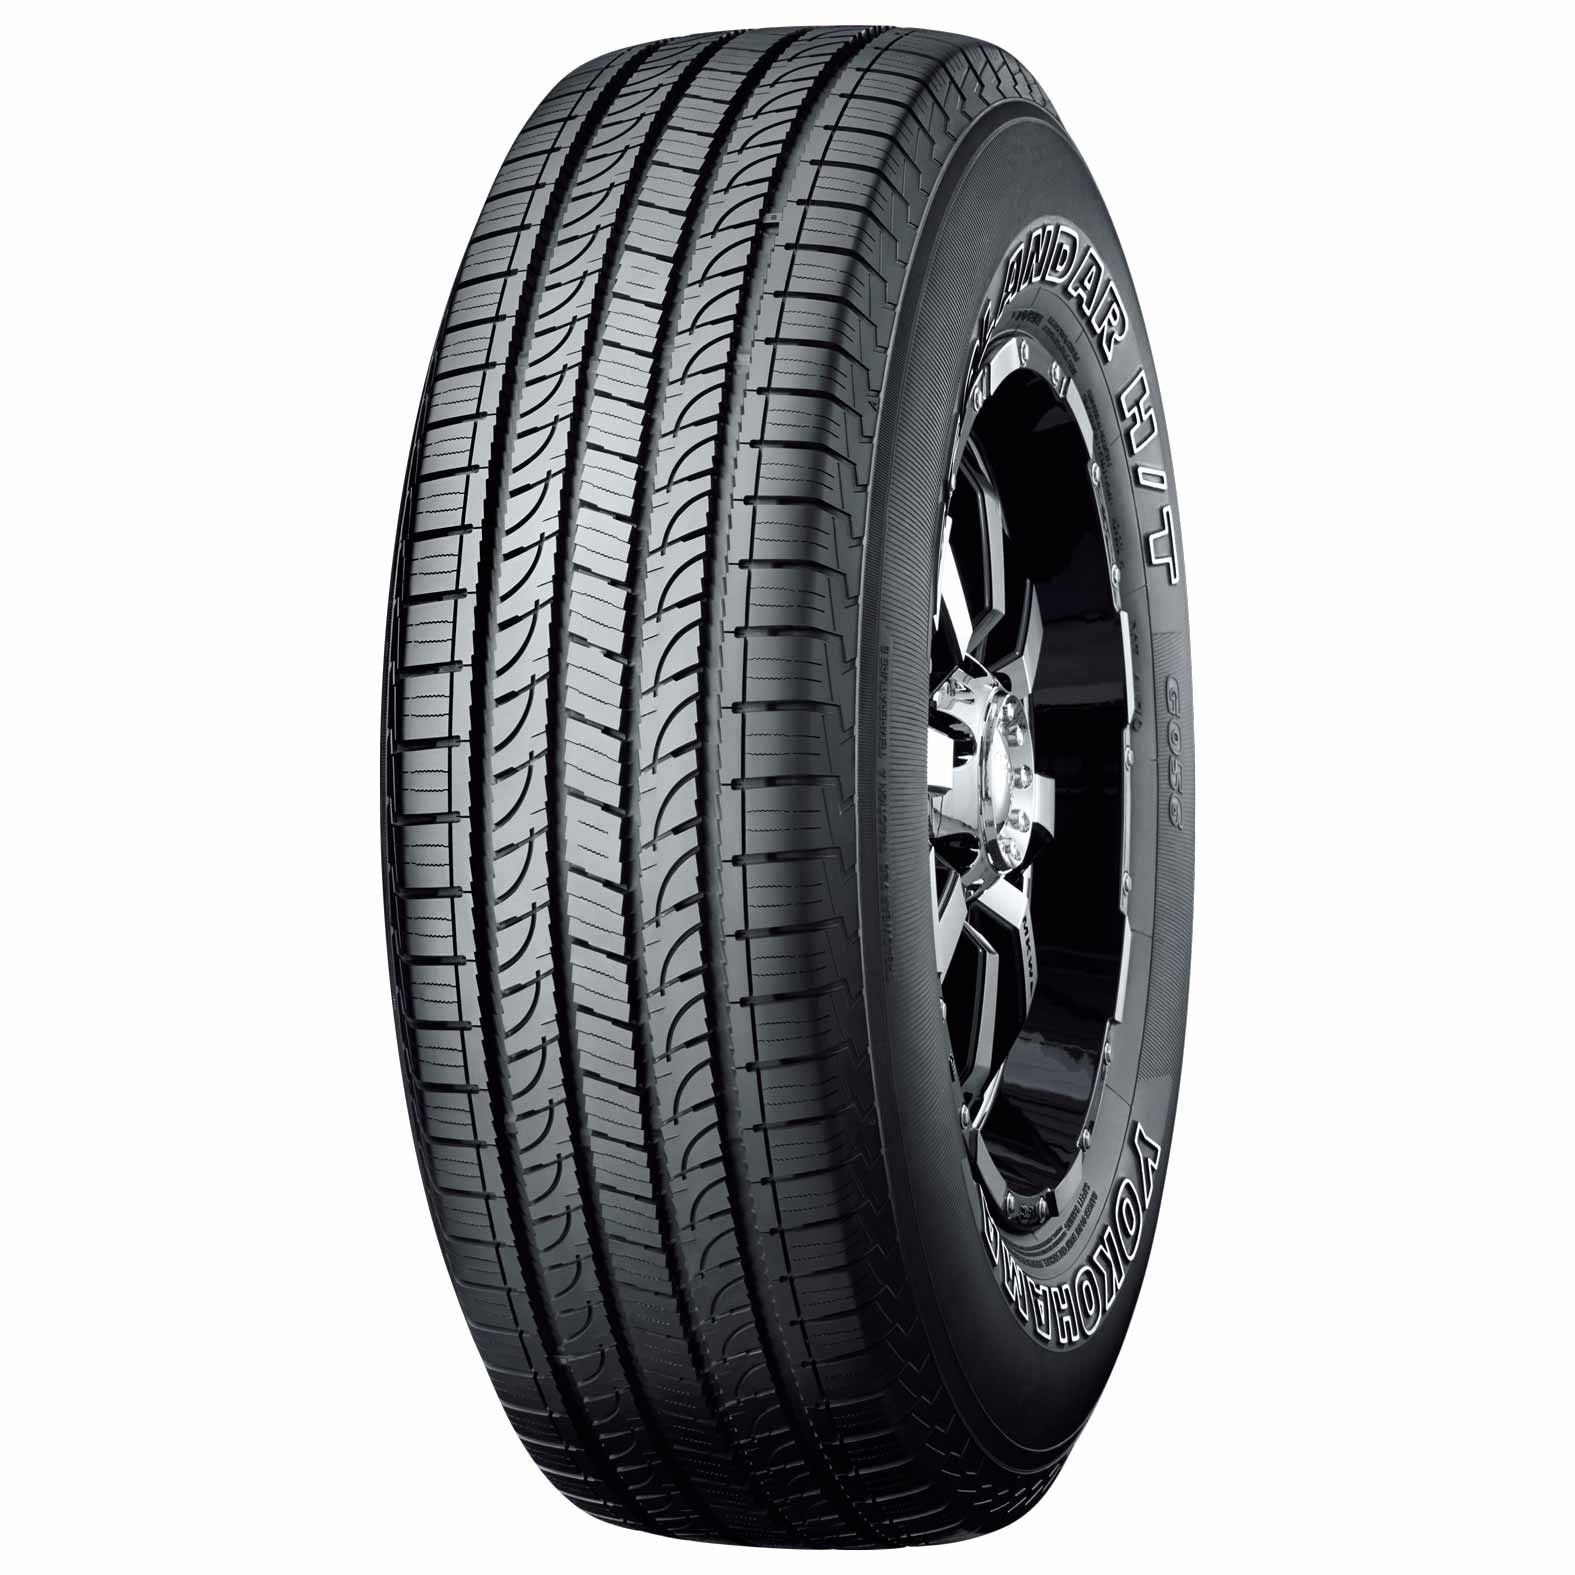 Yokohama Geolandar H/T G056 Tires for 3-Season | Kal Tire